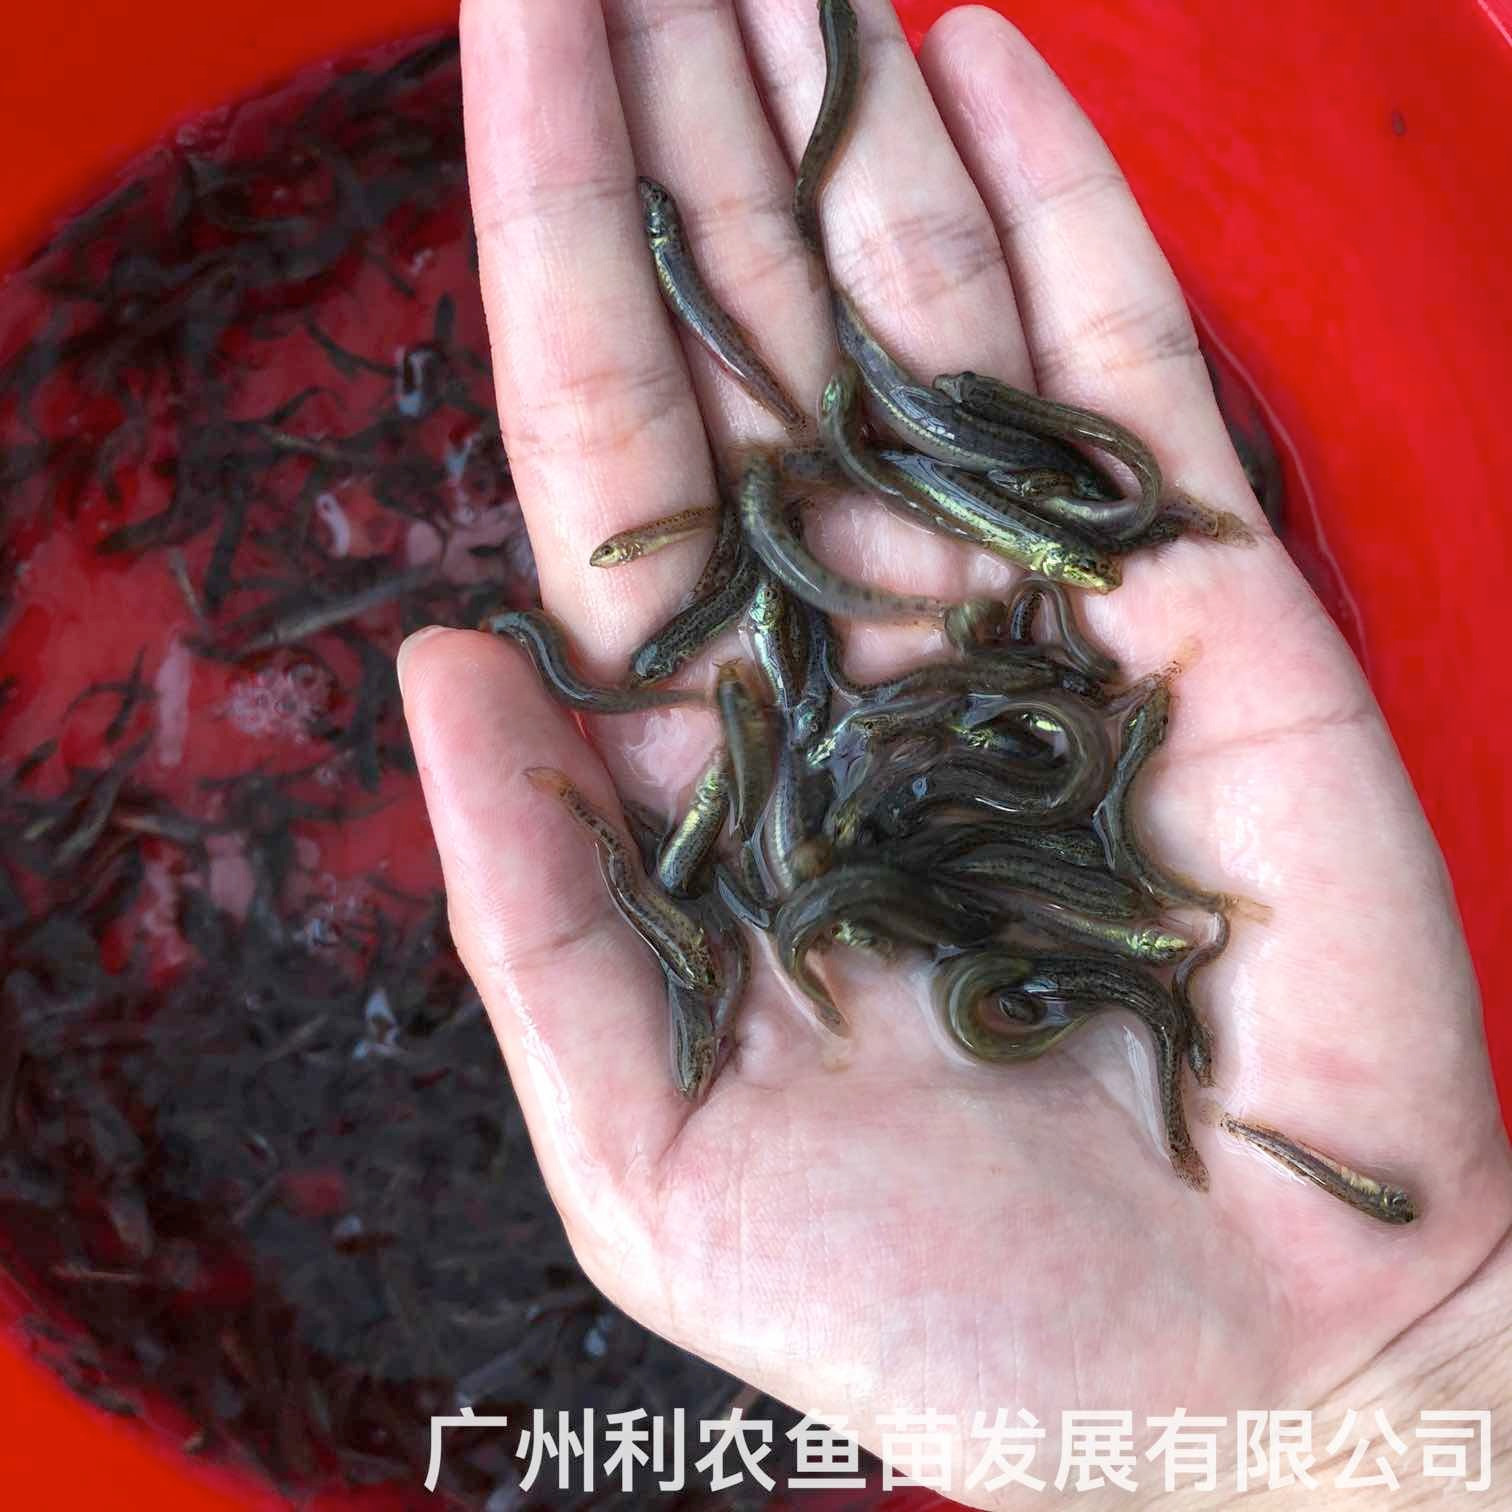 广东河源台湾泥鳅苗出售出售价格广东阳江泥鳅鱼苗批发养殖基地